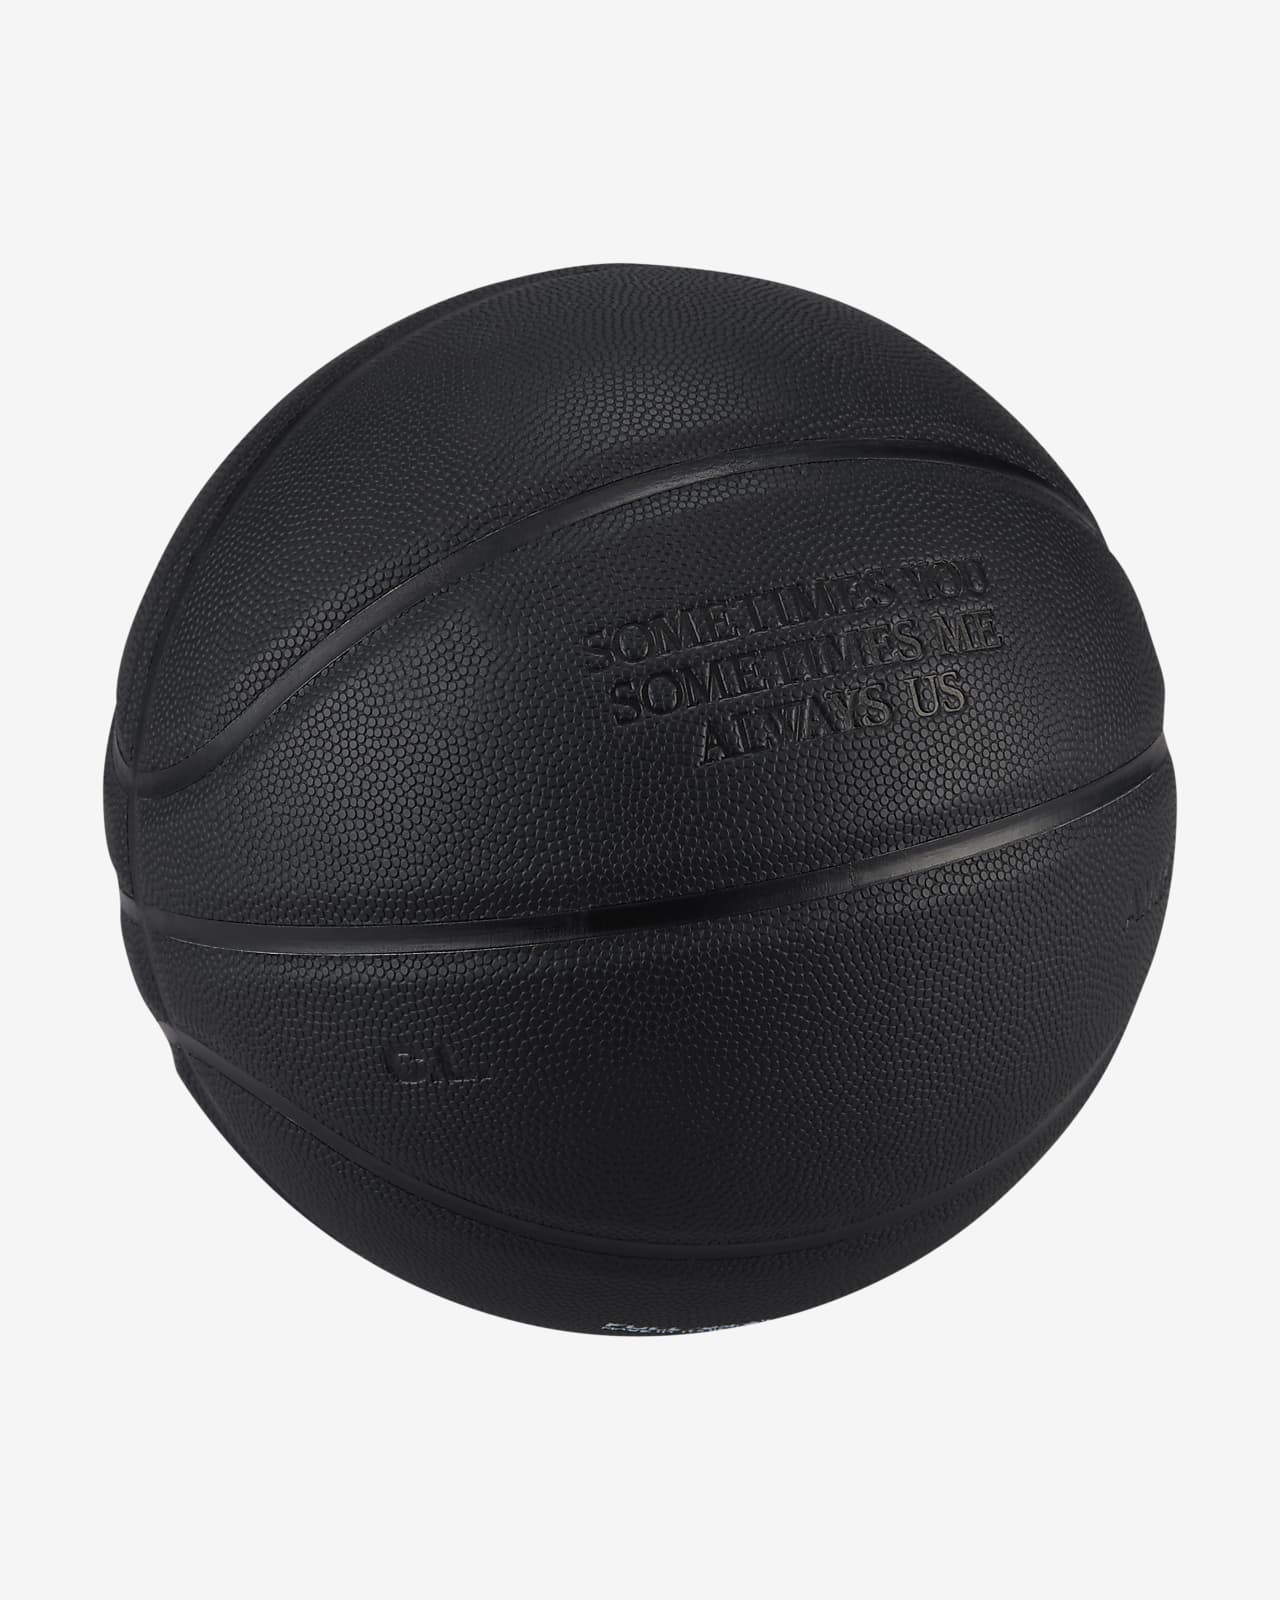 Descubrir 96+ imagen que es un balon de basquetbol - Abzlocal.mx